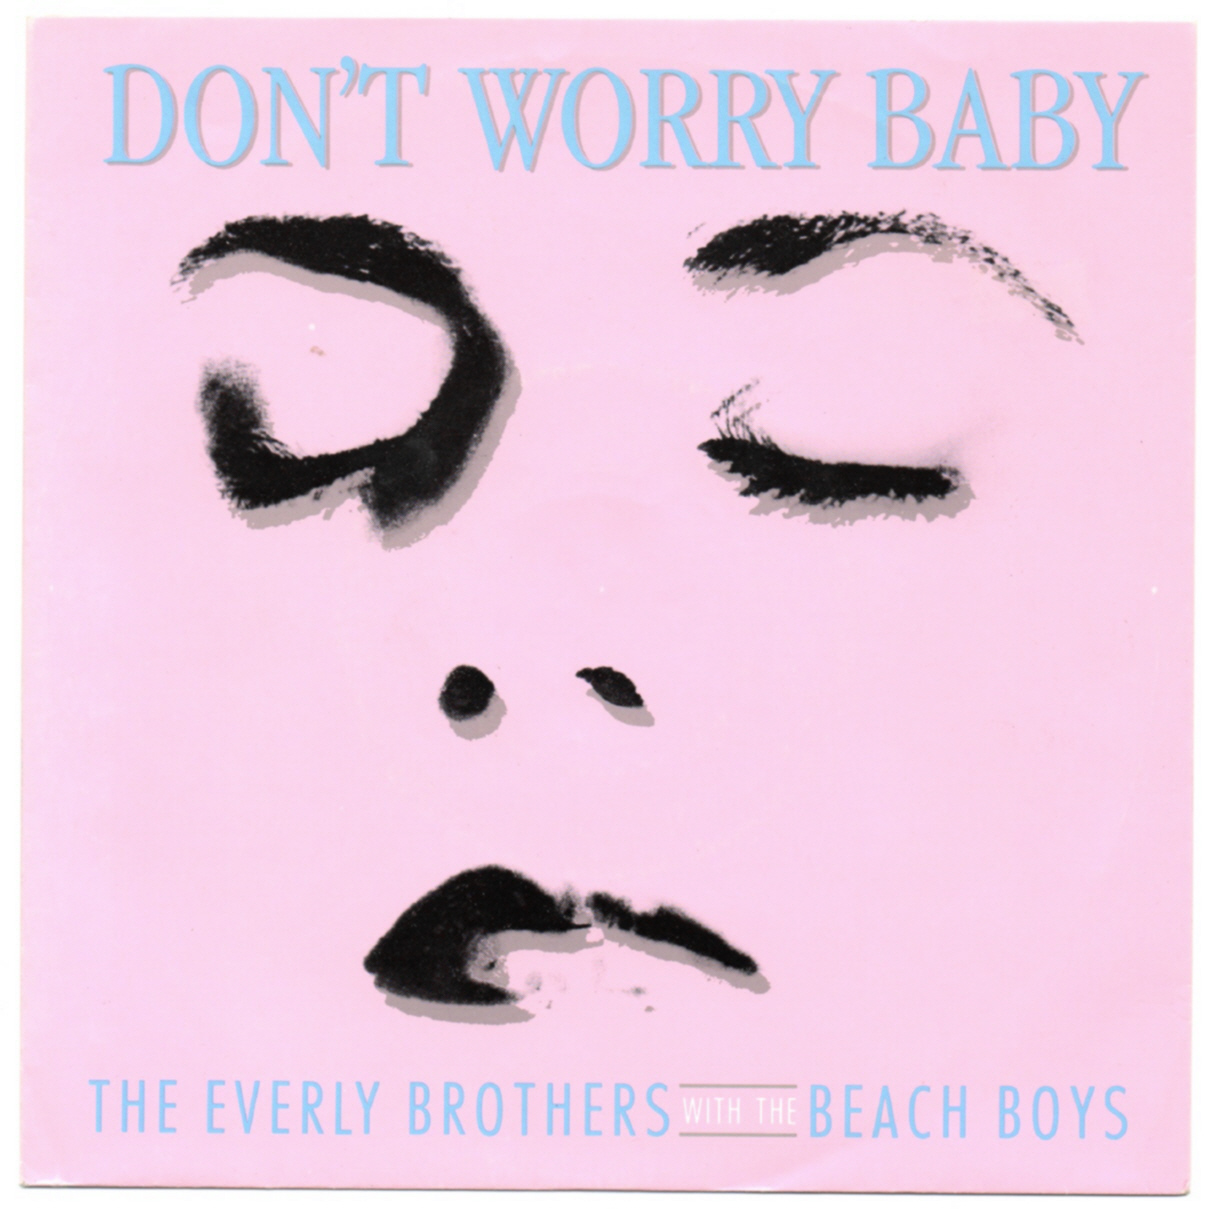 Beach Boys on 45 - Germany - Capitol 1981-1990